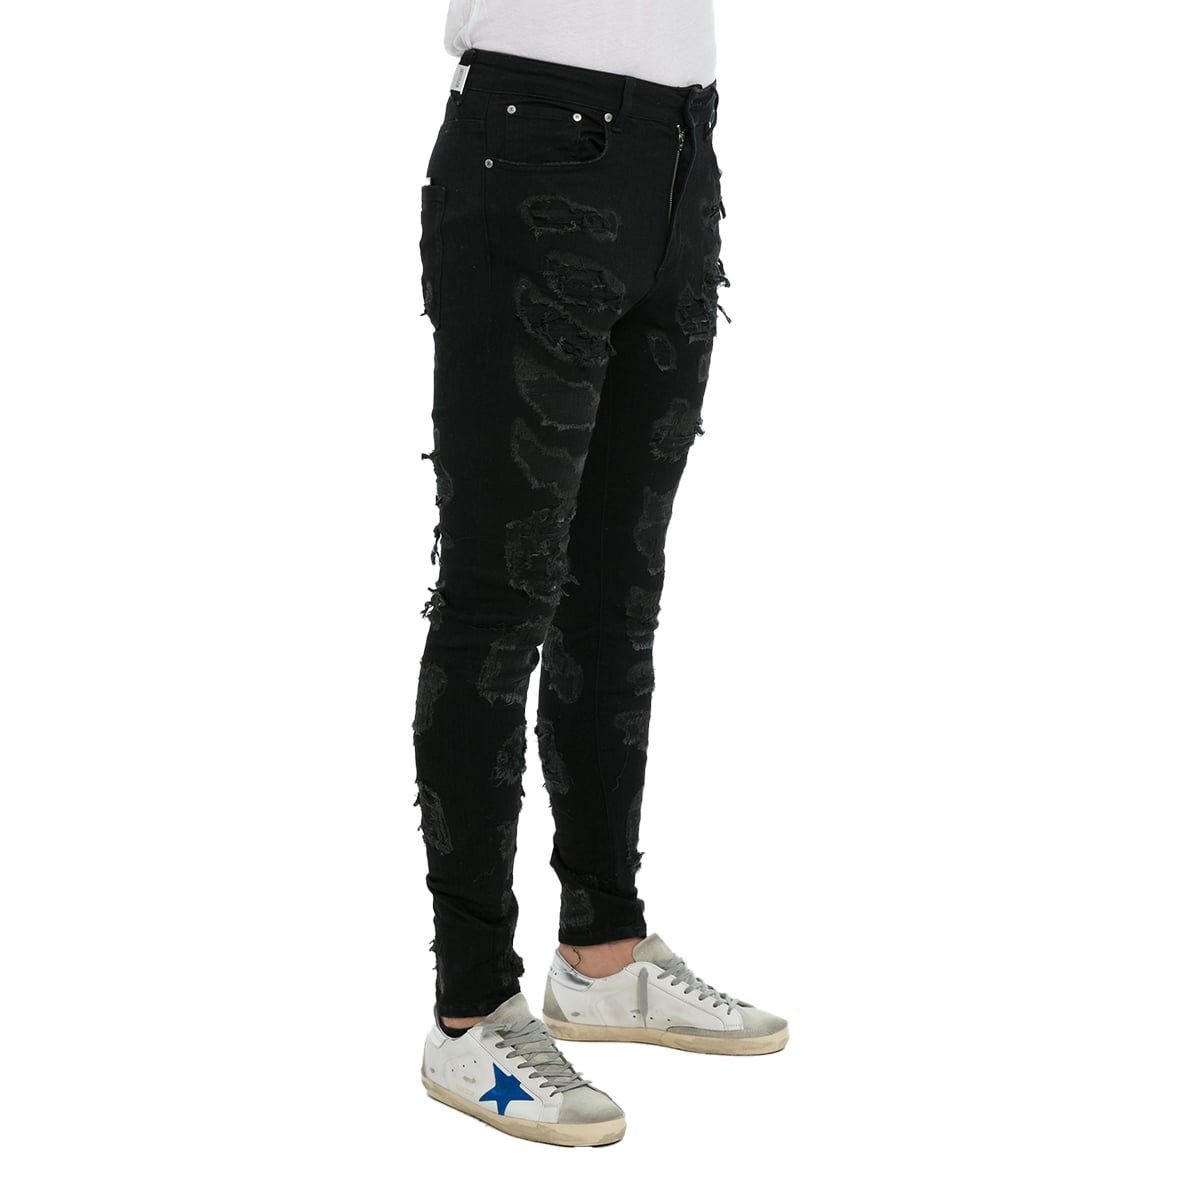 Shredded Black Denim Jeans